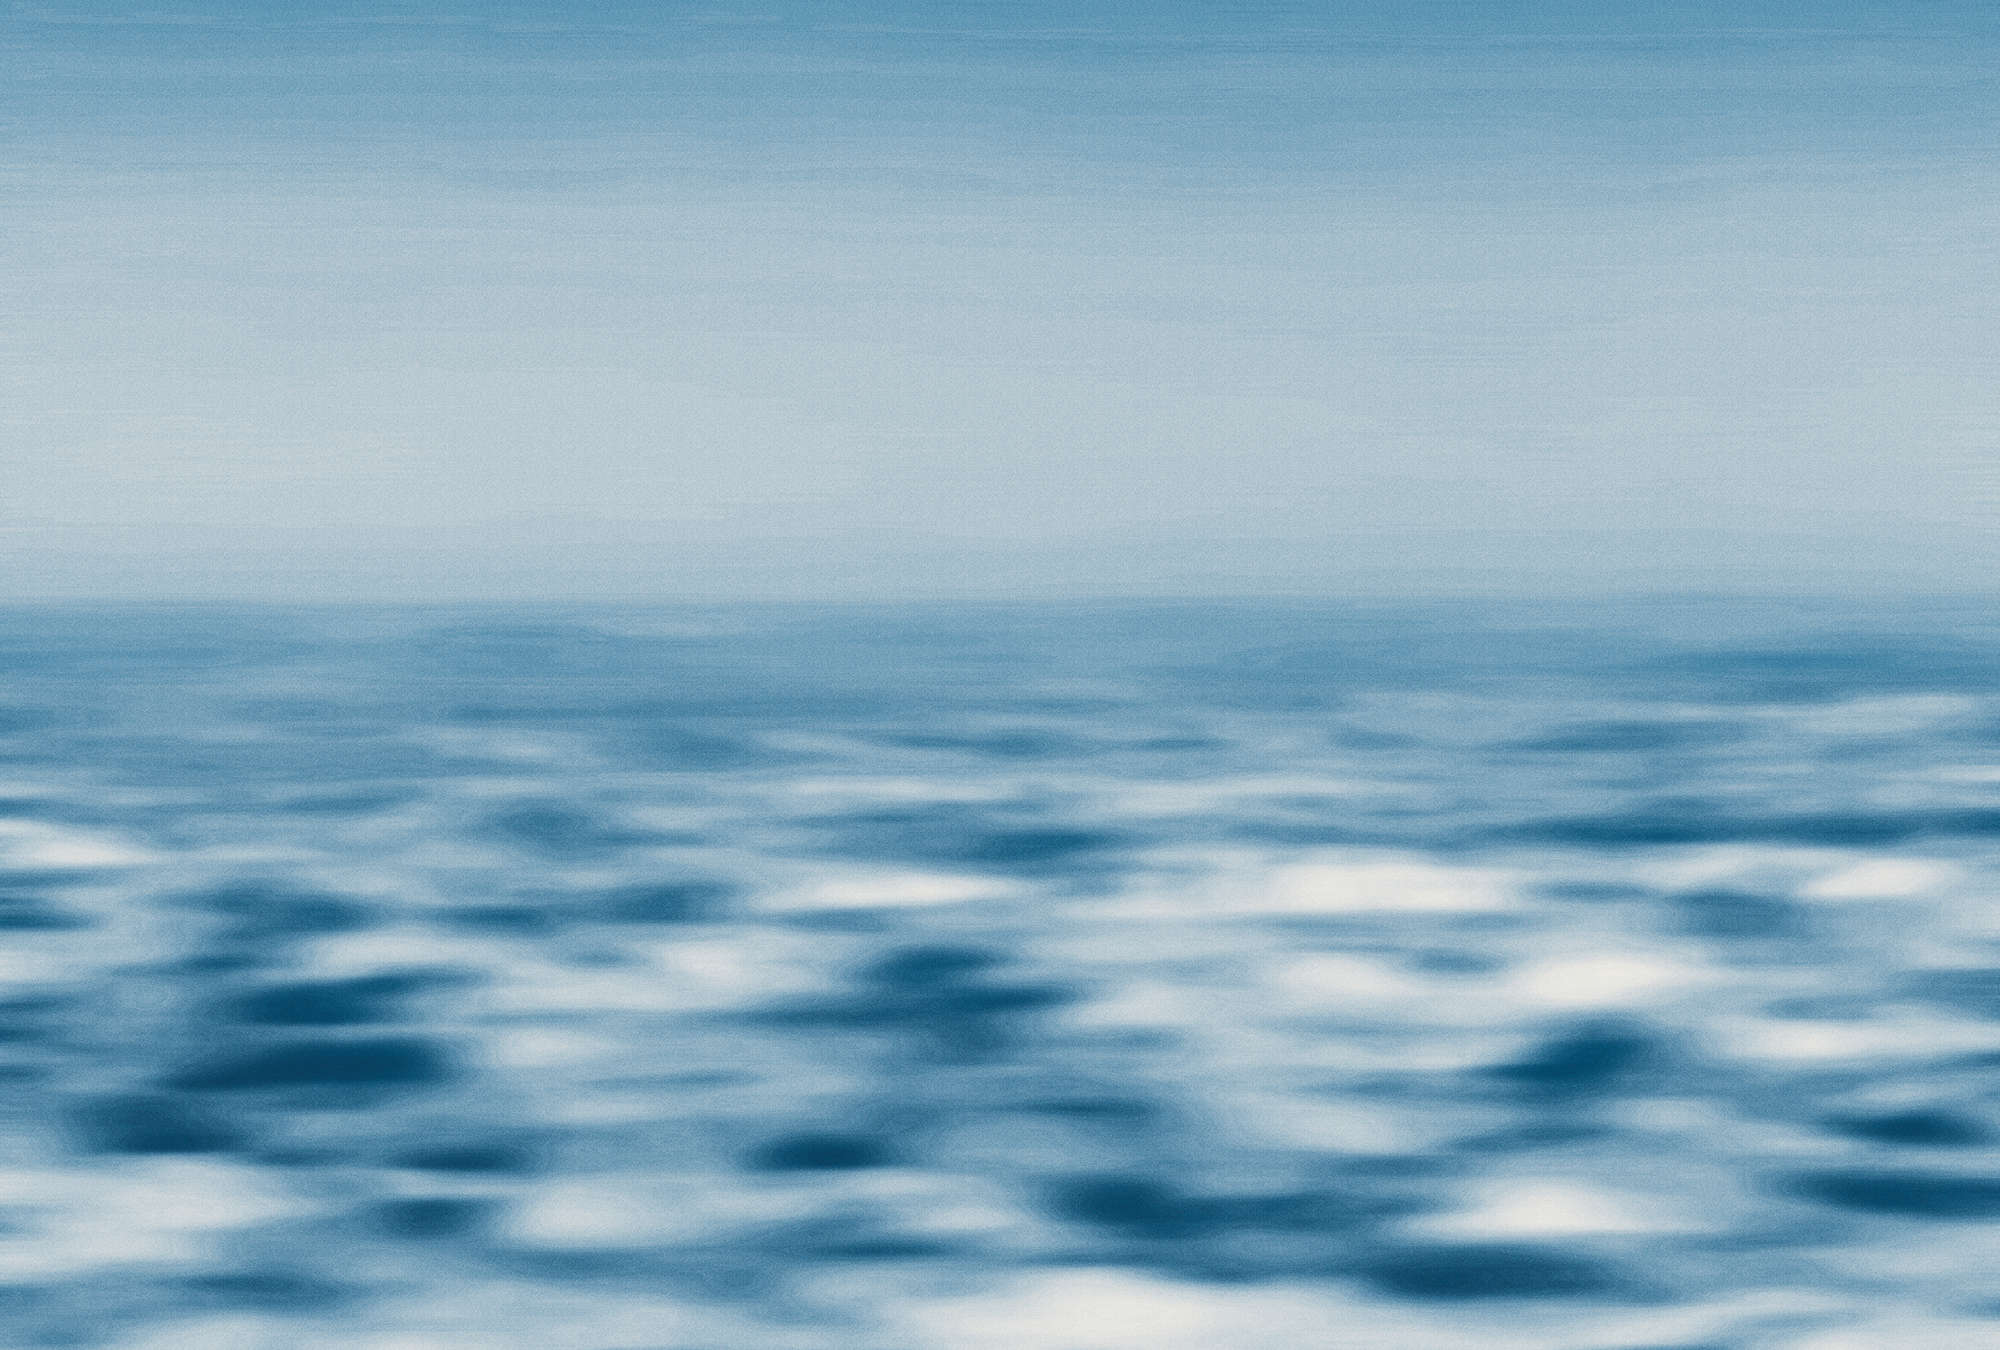             Mural abstracto con vista al mar, olas y cielo - azul, blanco
        